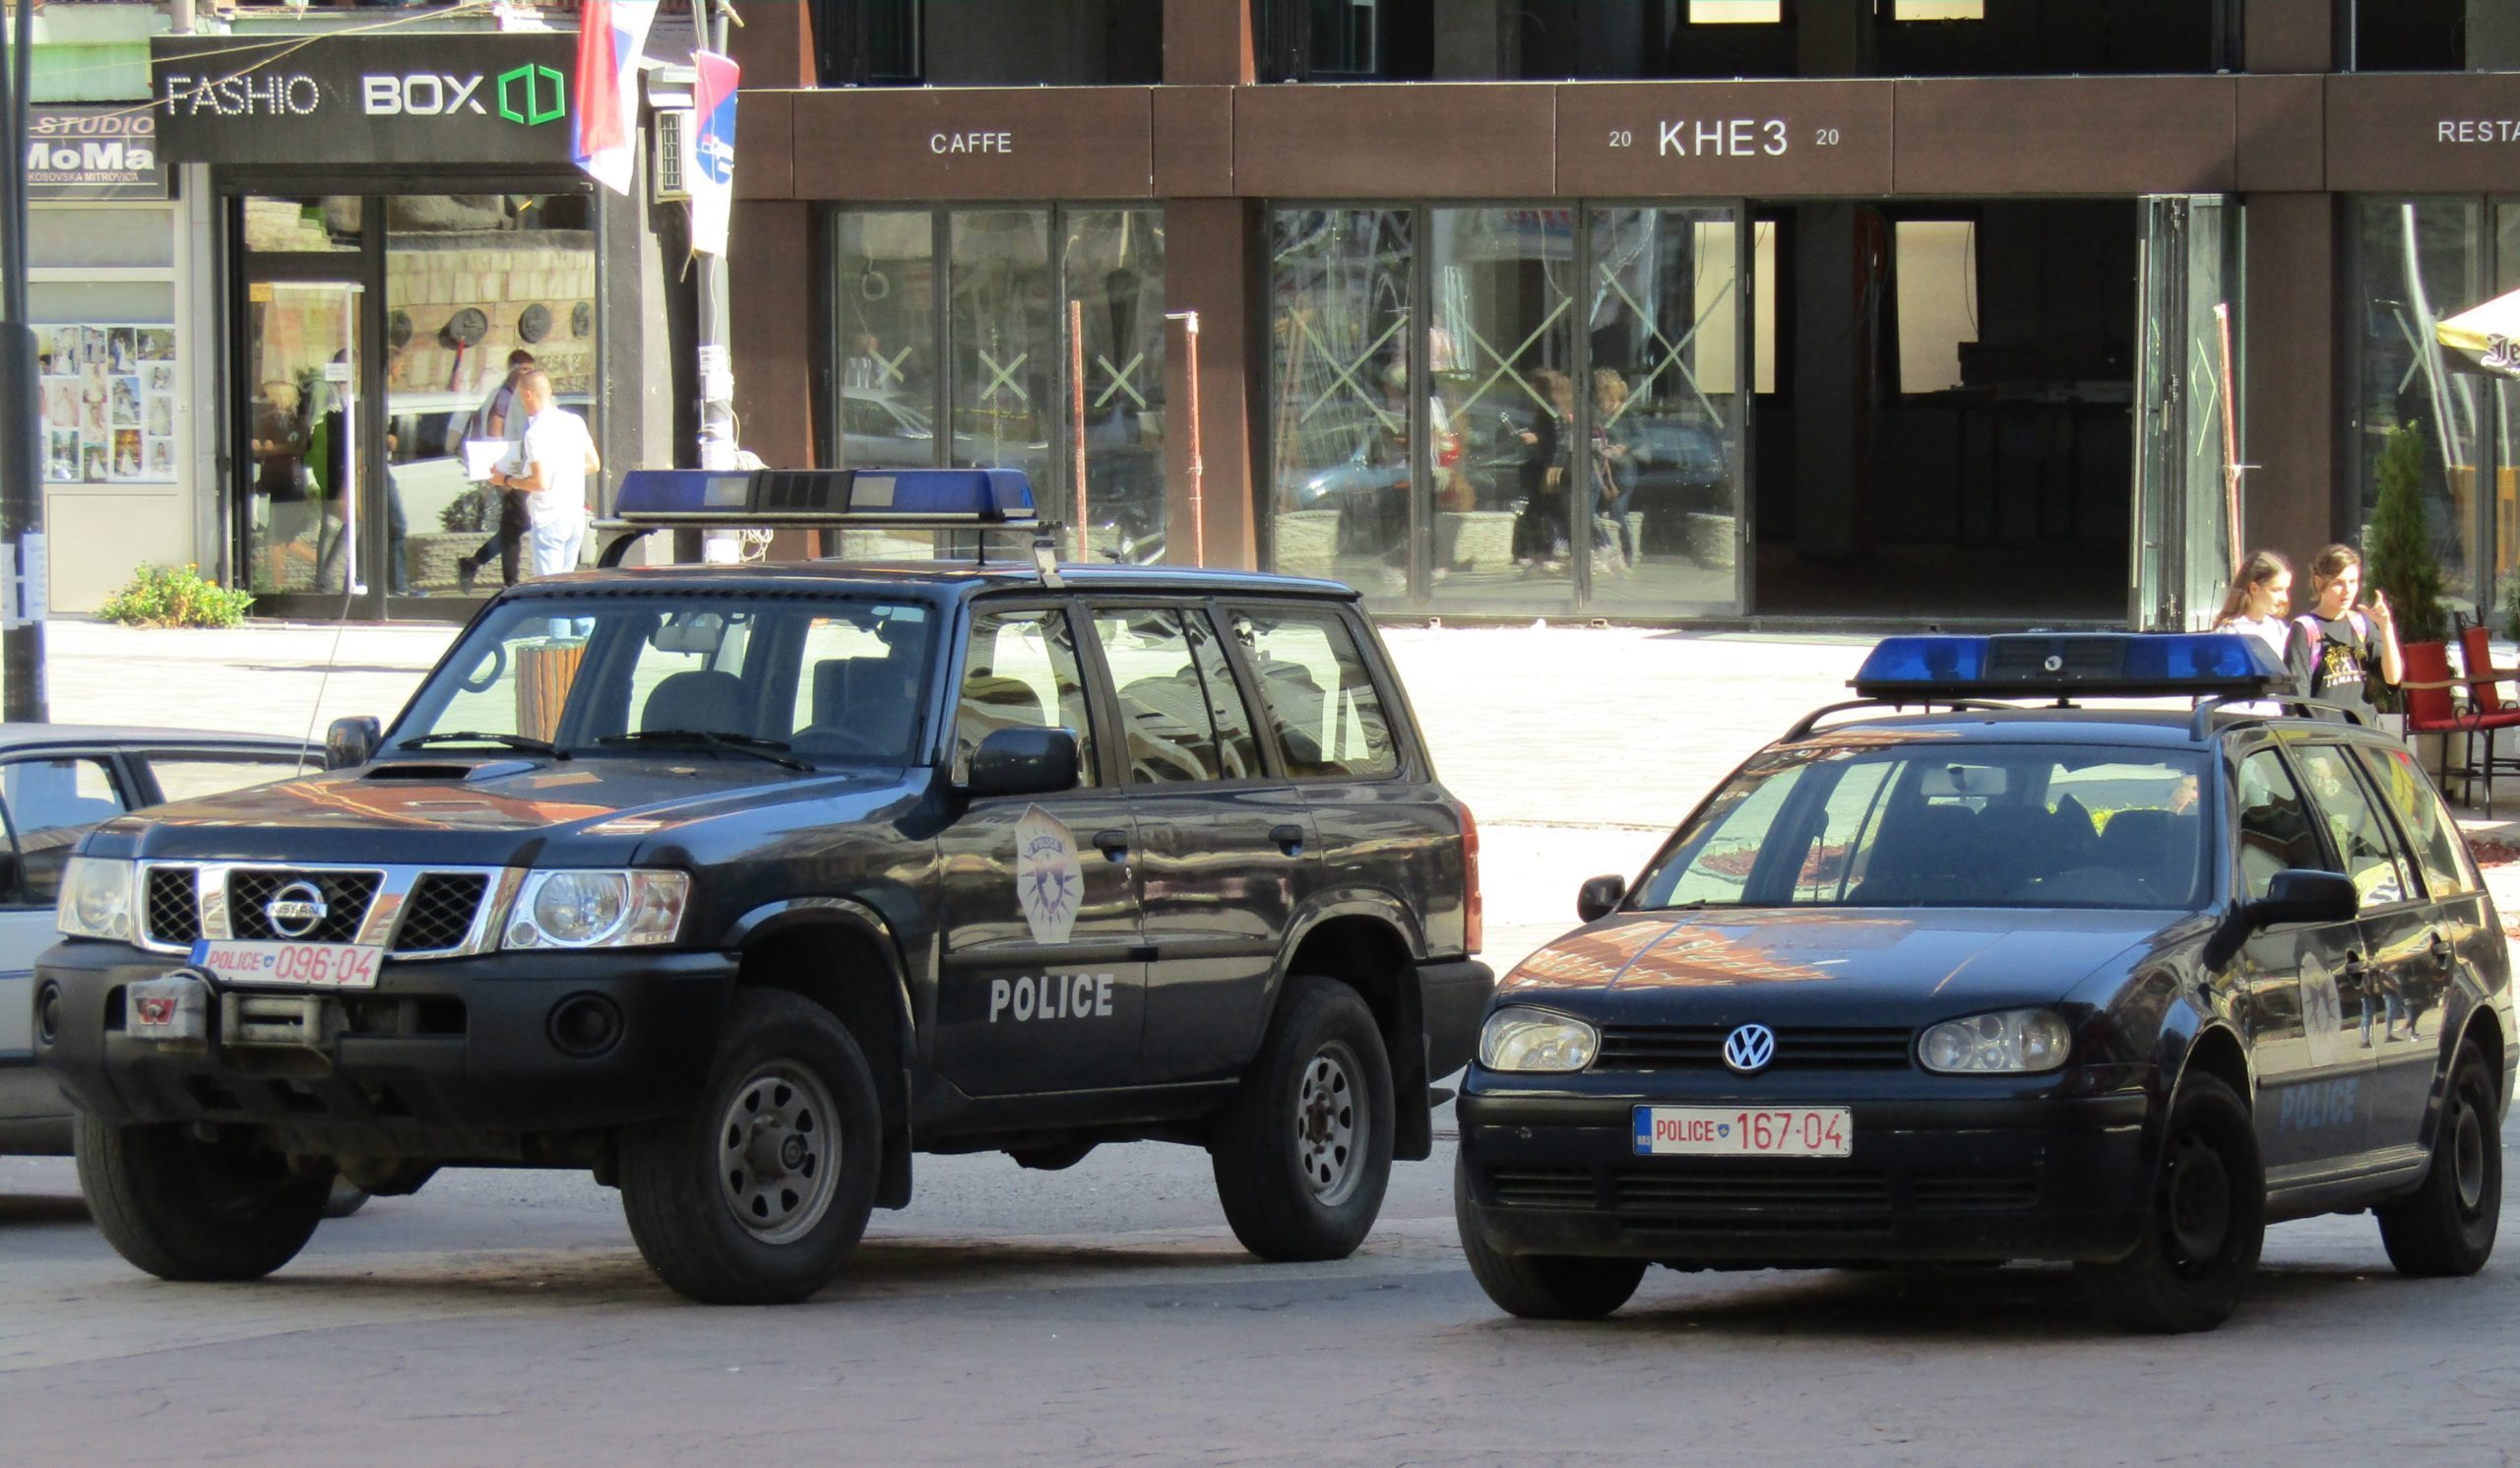 u-akciji-policije-kosova-kod-peci-uhapseno-11-osoba